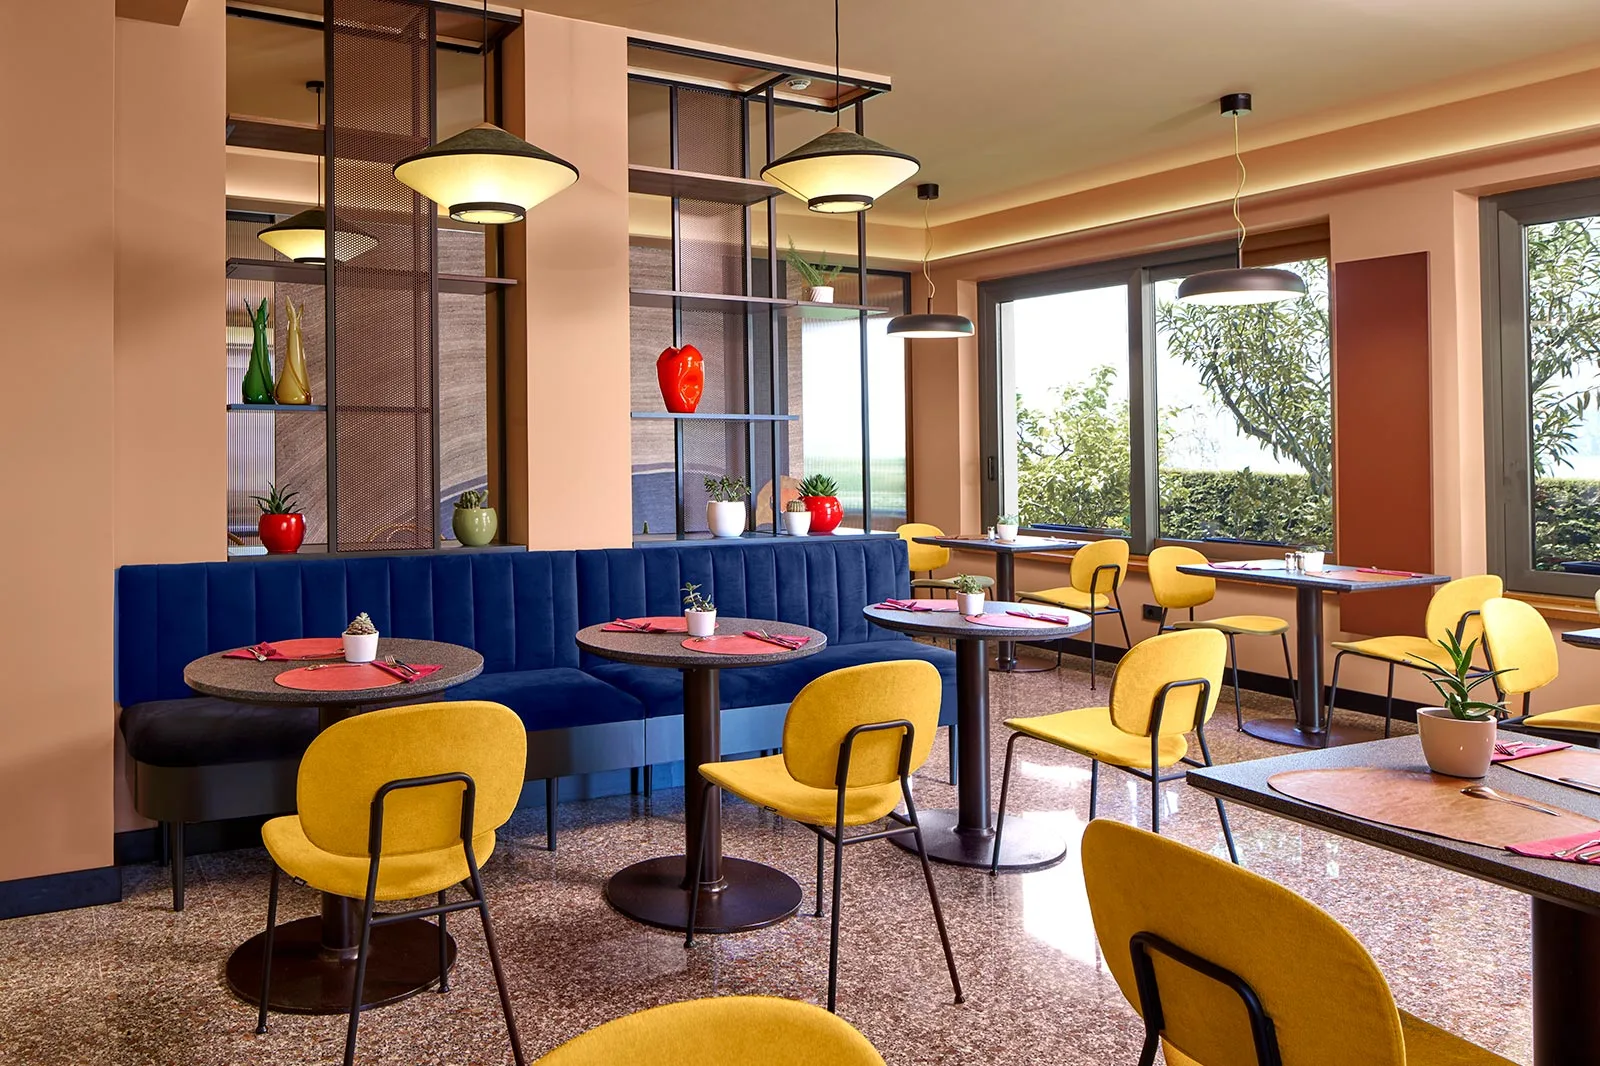 arredamento hotel sala colazione contrasti colore spazi comuni